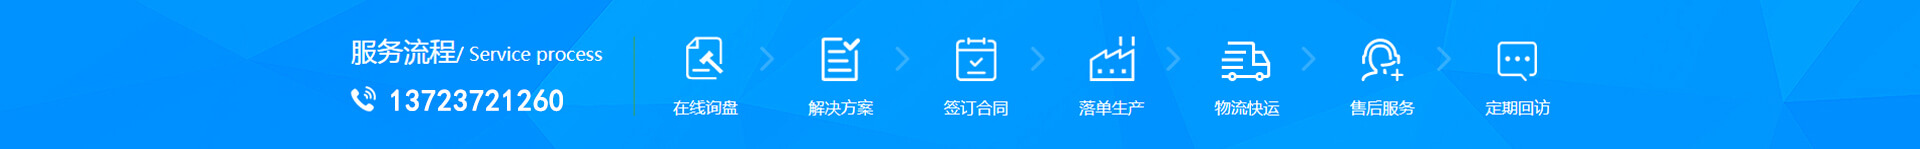 彩神彩票app公司-彩神彩票app公司